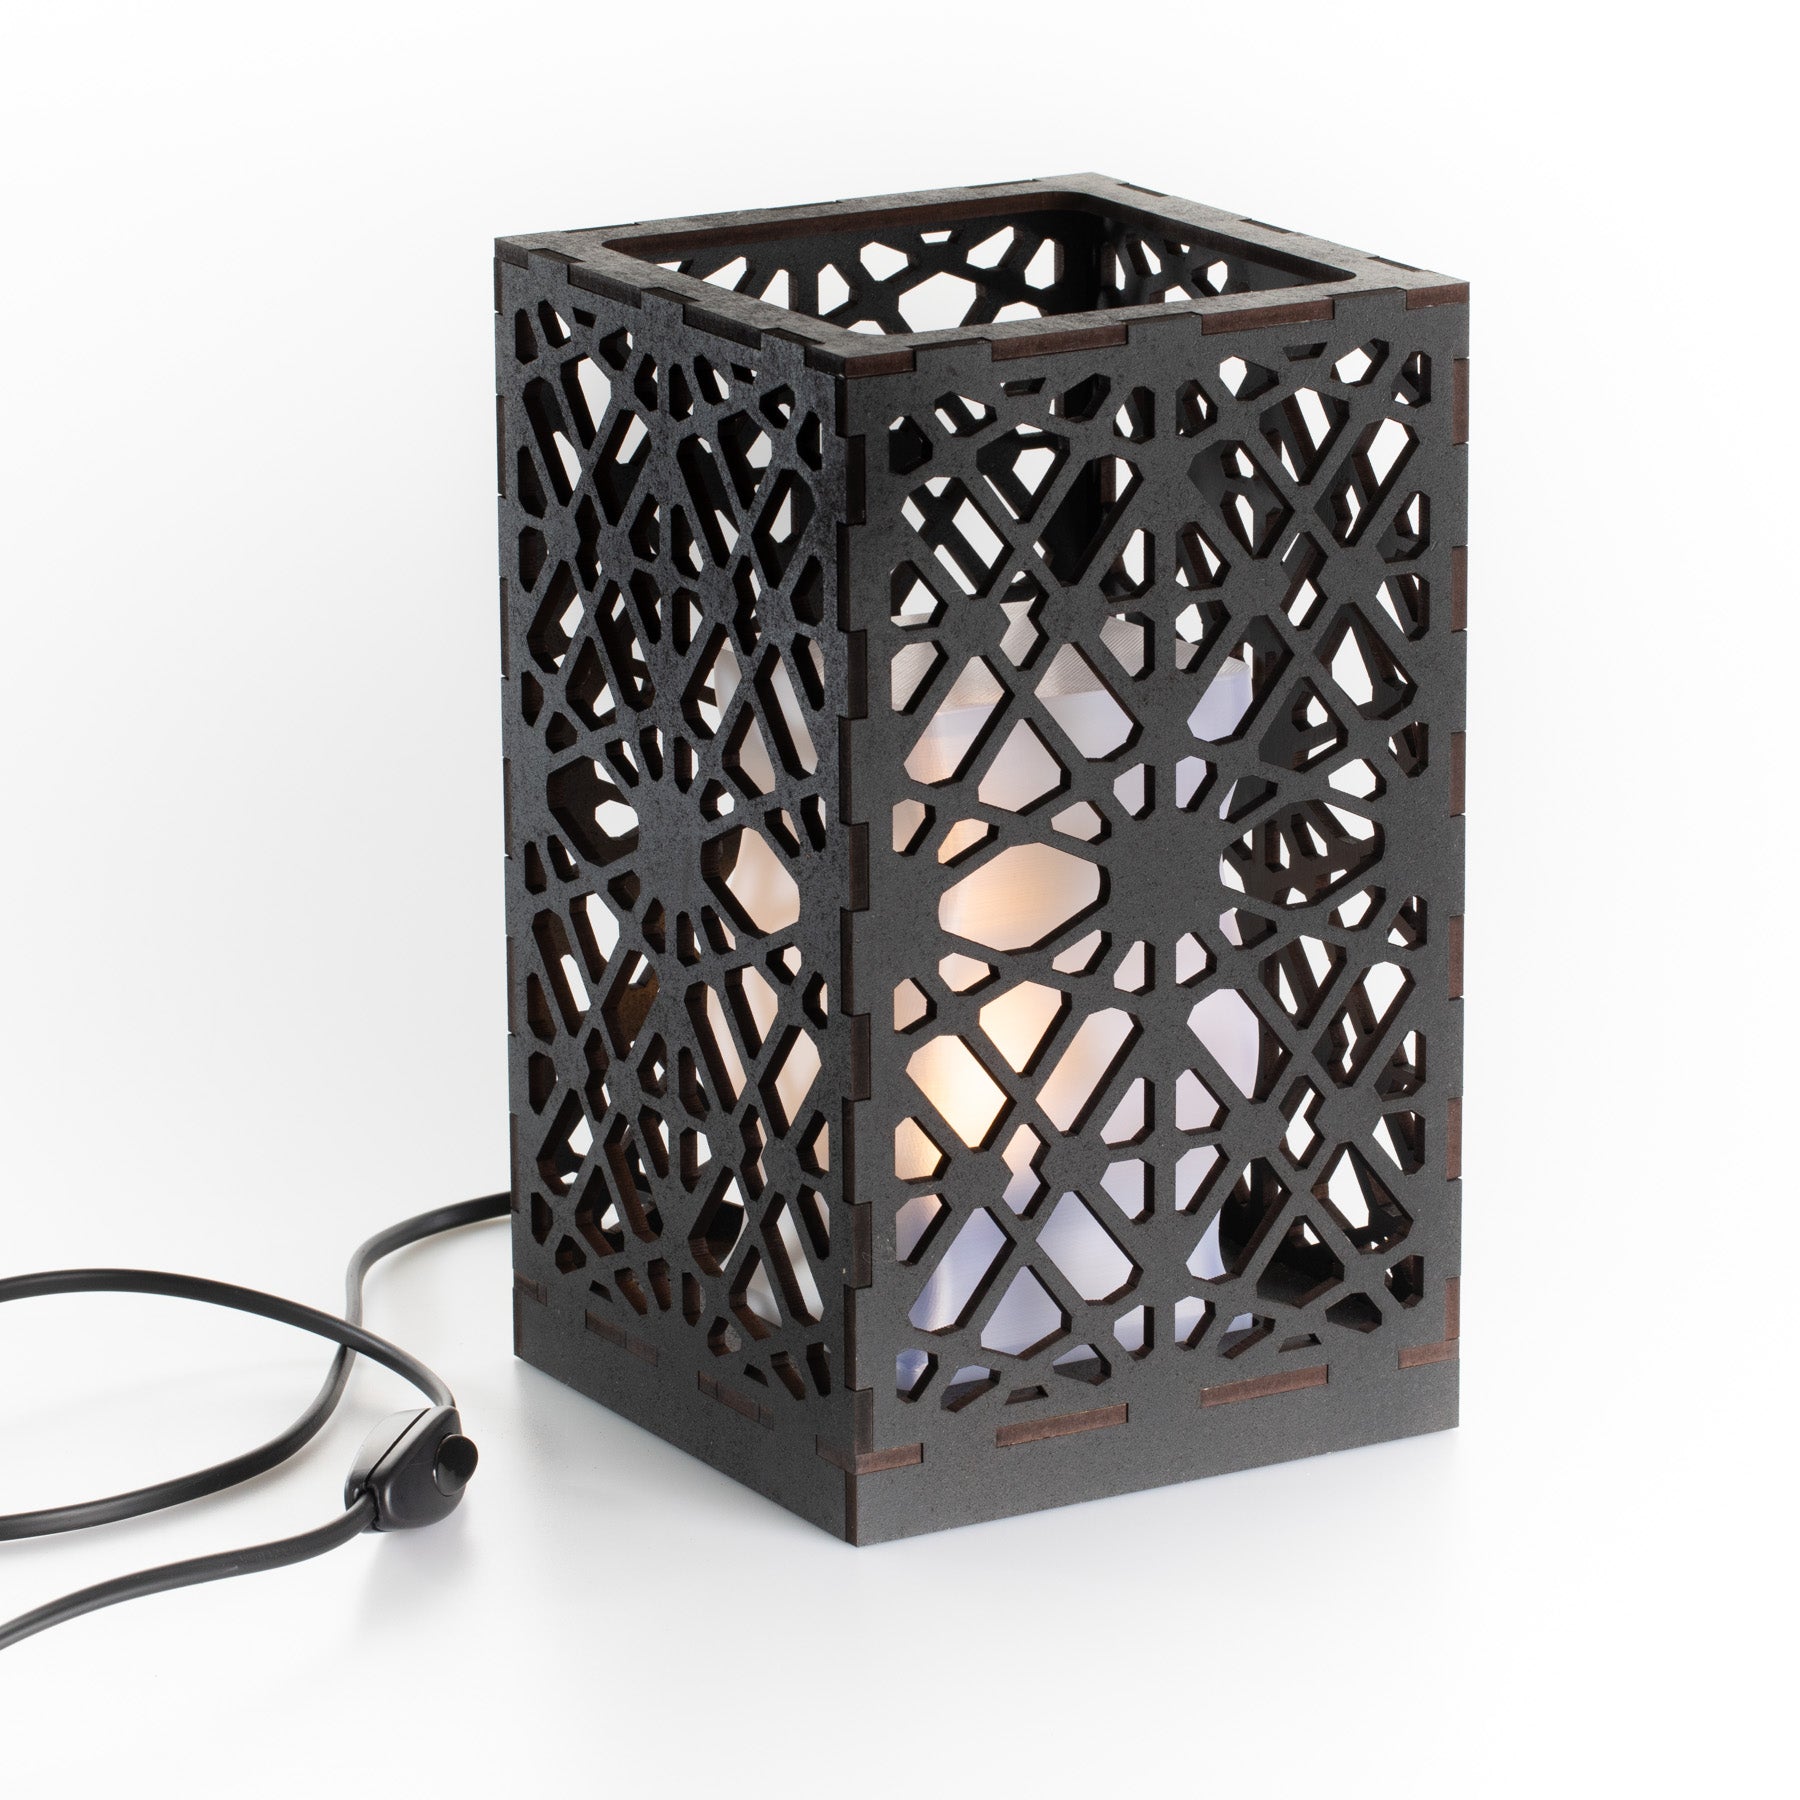 Sweet Home Trends® Box Lamp met Industrial Frame Patroon